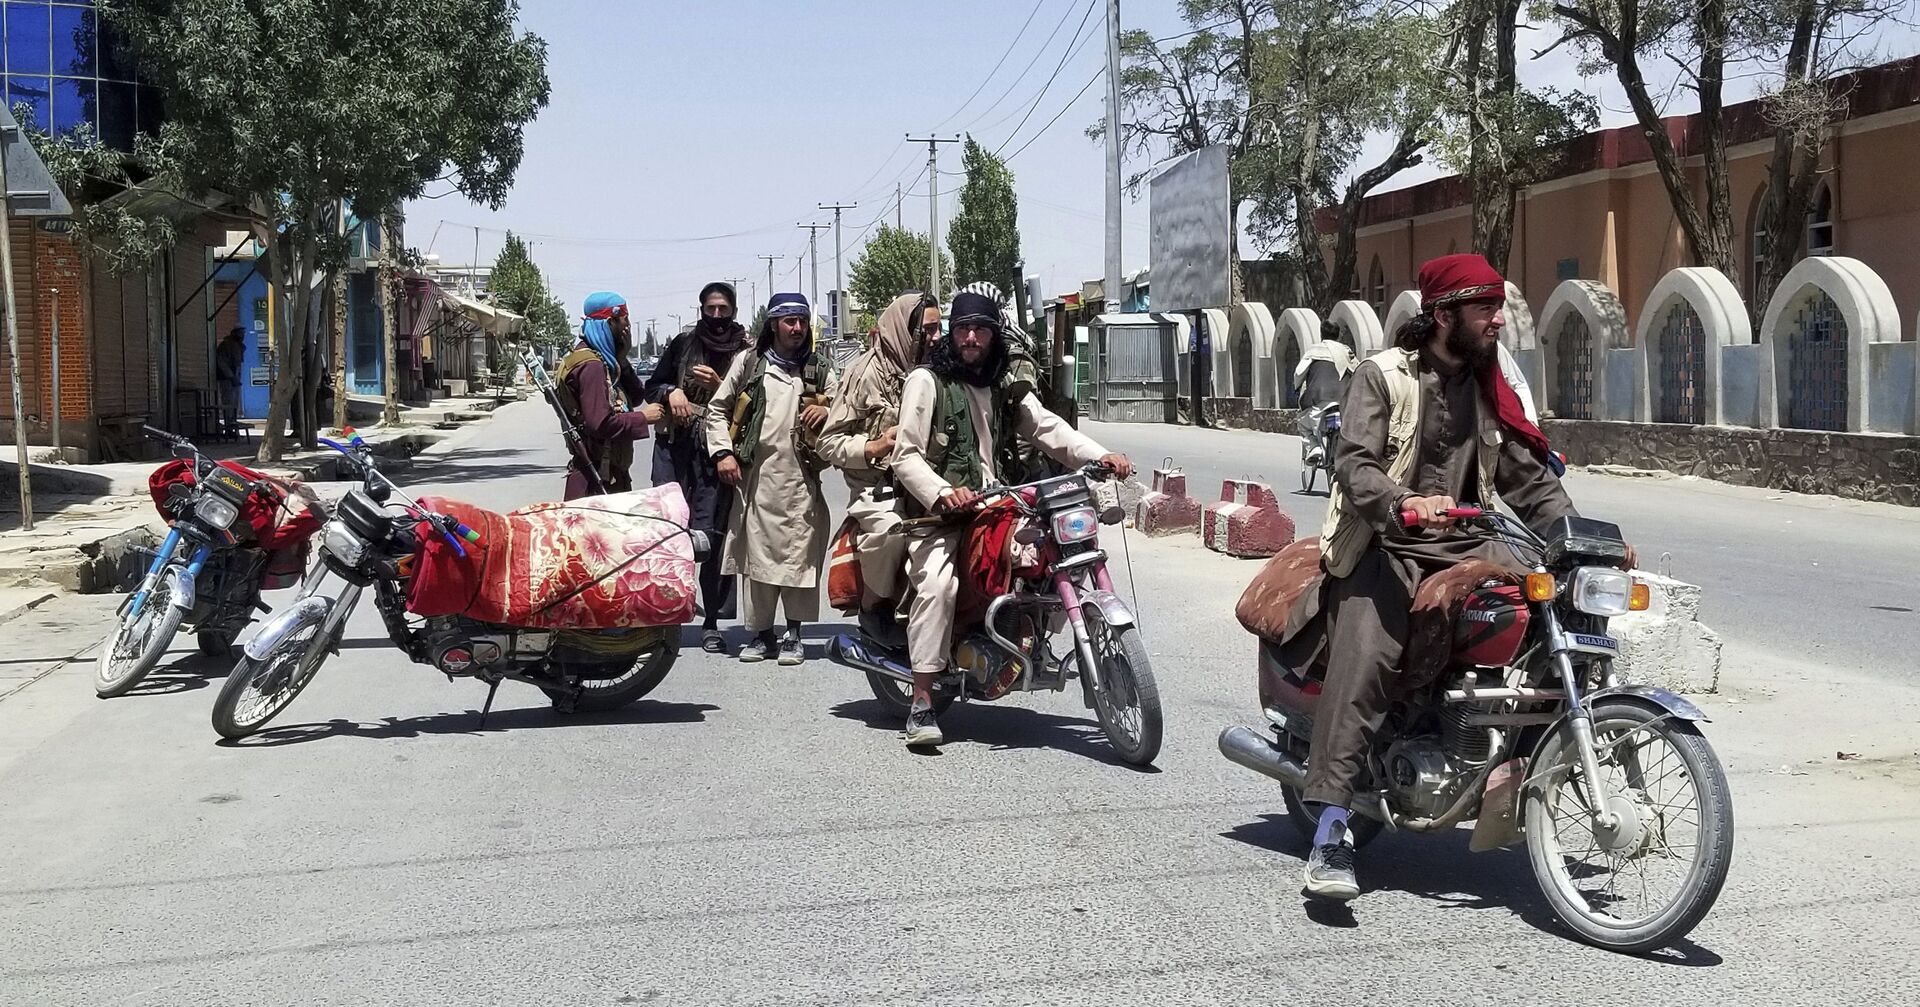 Бойцы Талибана* патрулируют захваченный город Газни, Афганистан - ИноСМИ, 1920, 12.08.2021